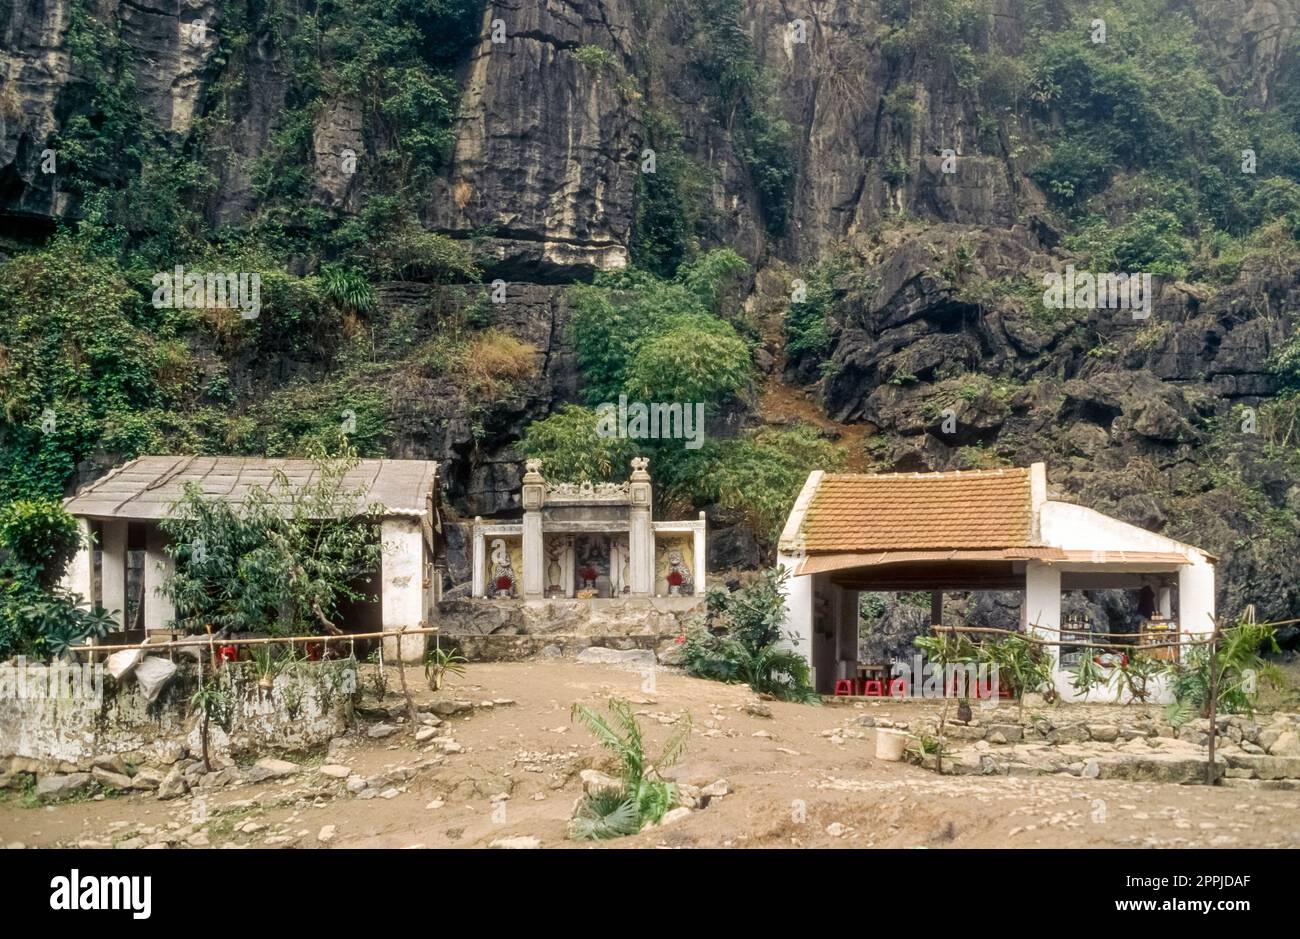 Scannerizzata di una fotografia storica a colori di un complesso di templi buddisti ai piedi di una roccia nel nord del Vietnam Foto Stock